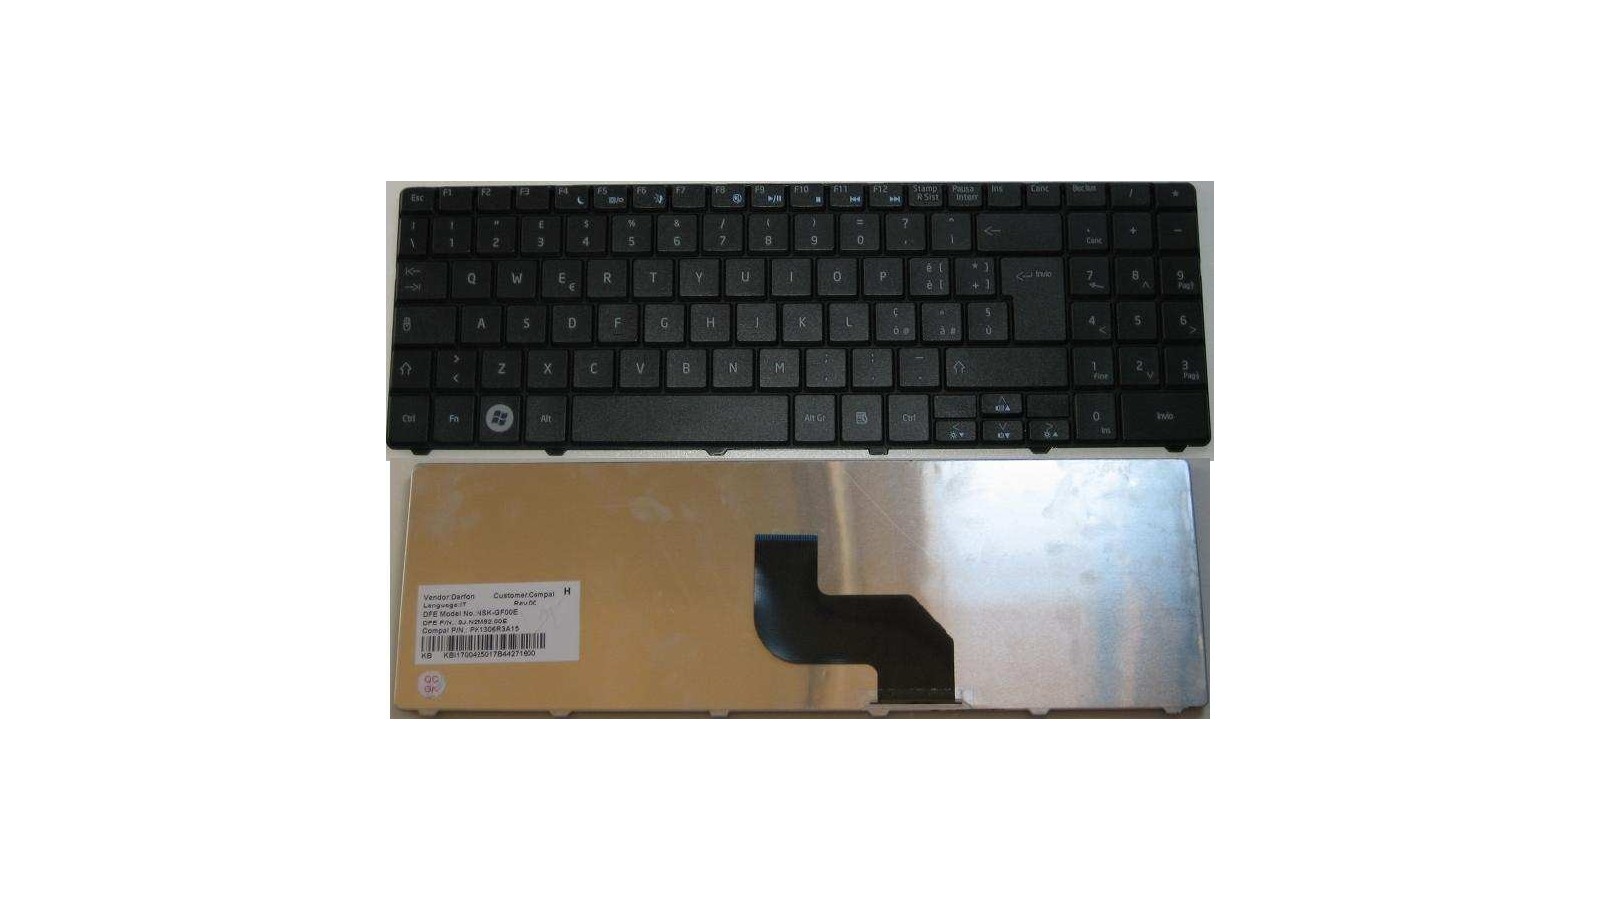 Tastiera italiana compatibile con Acer Emachines E525 E625 E627 E725